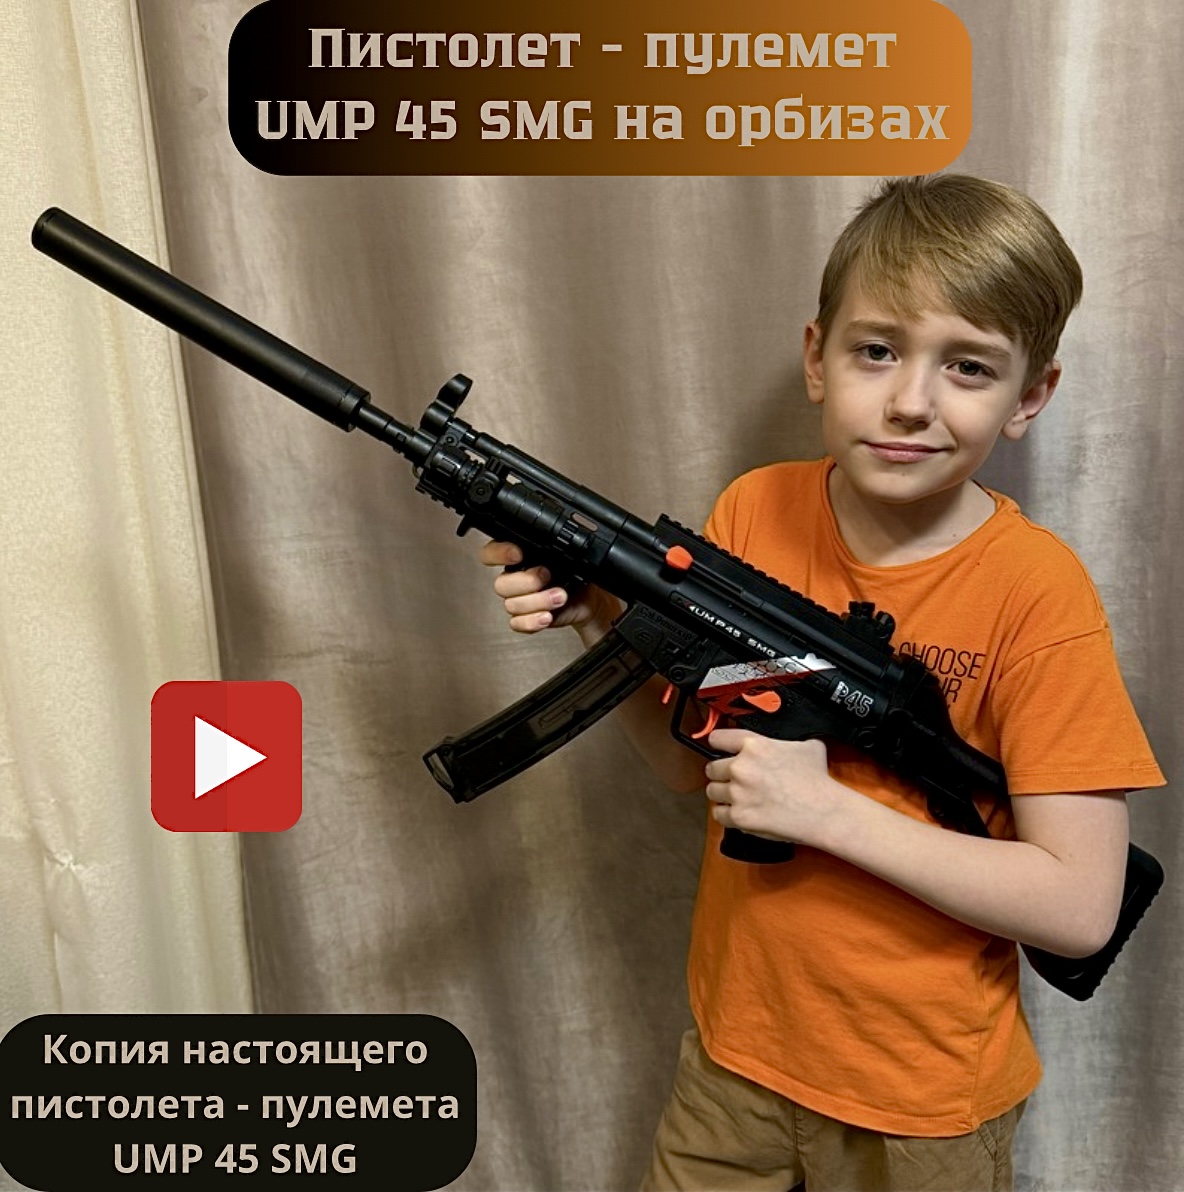 Пистолет-пулемет детский игровой RanCap UMP 45 SMG с орбизами (игрушка) миномет